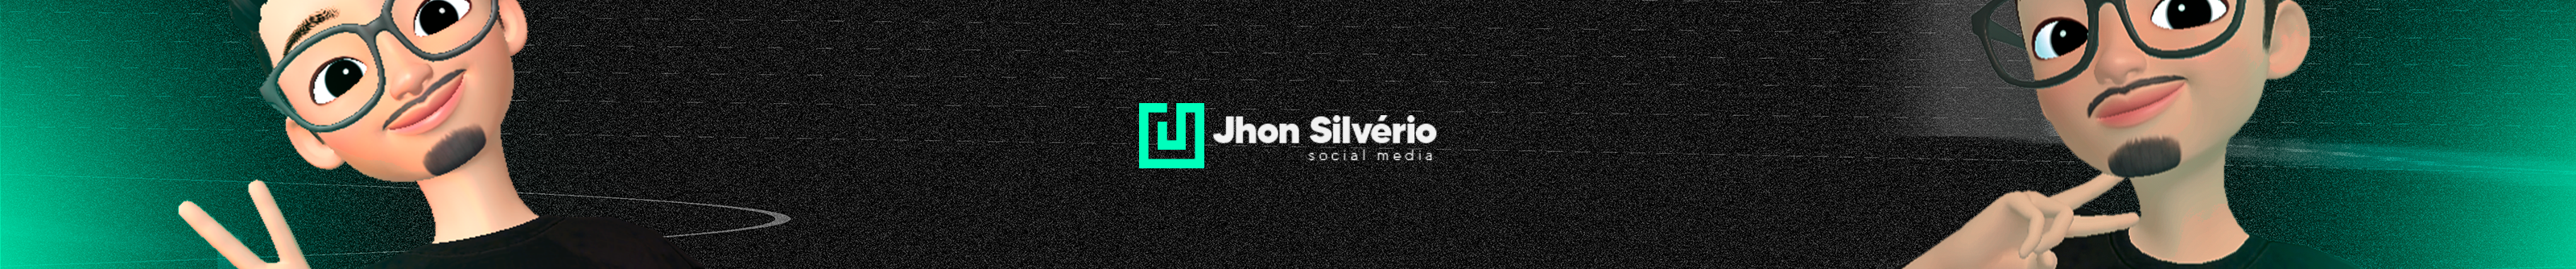 Bannière de profil de Jhon Silvério